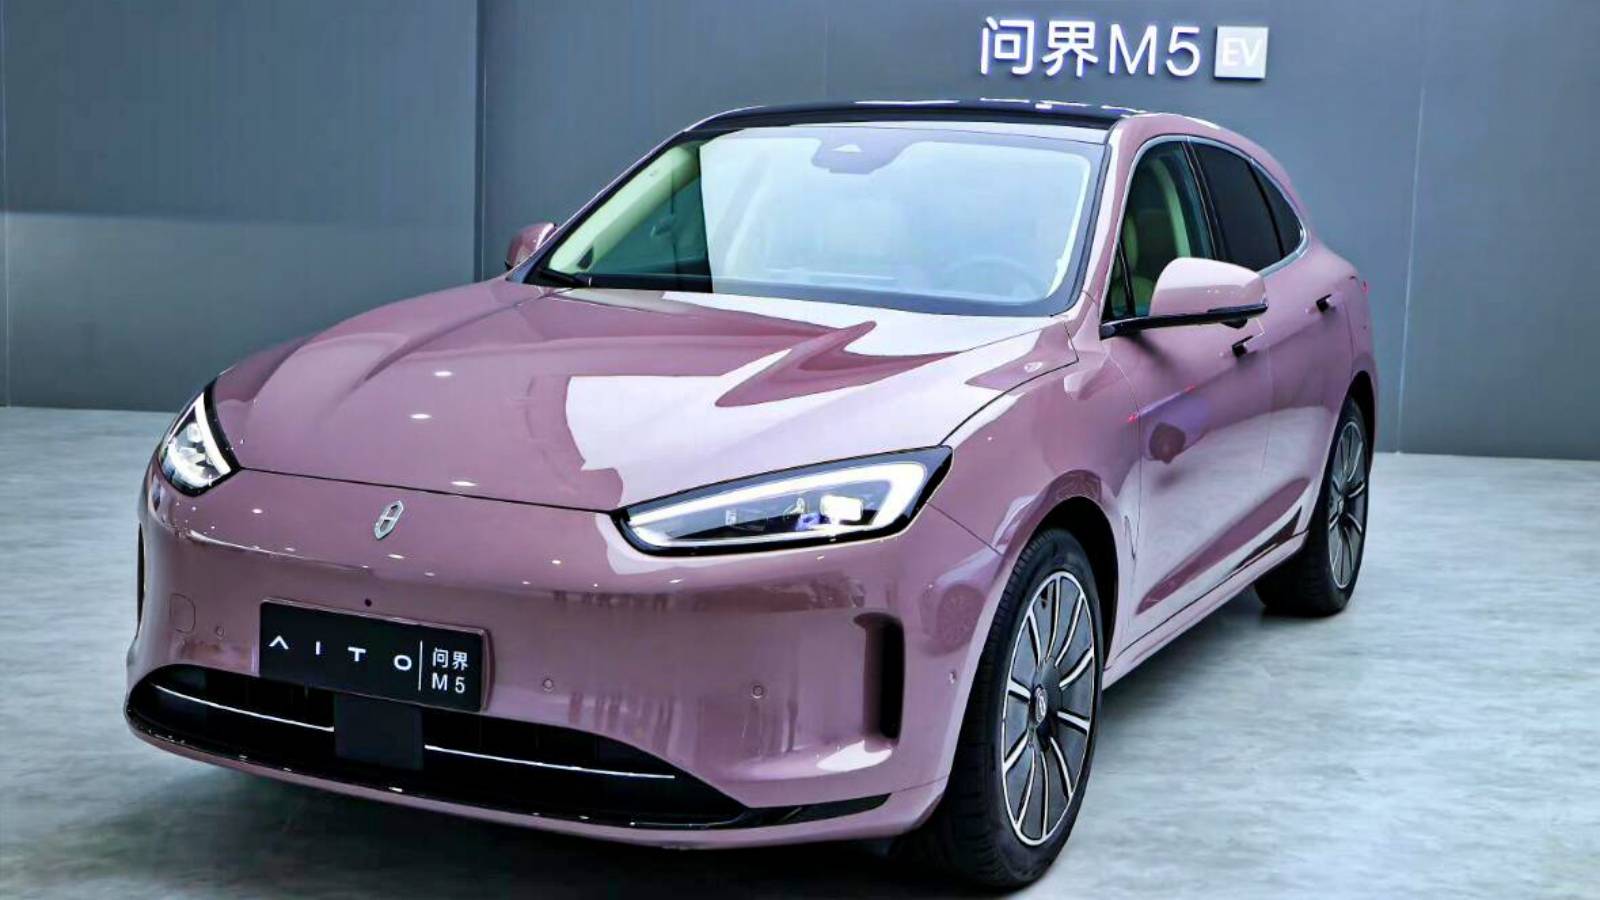 Huawei lanza oficialmente Aito M5, el nuevo coche eléctrico de marca exclusiva